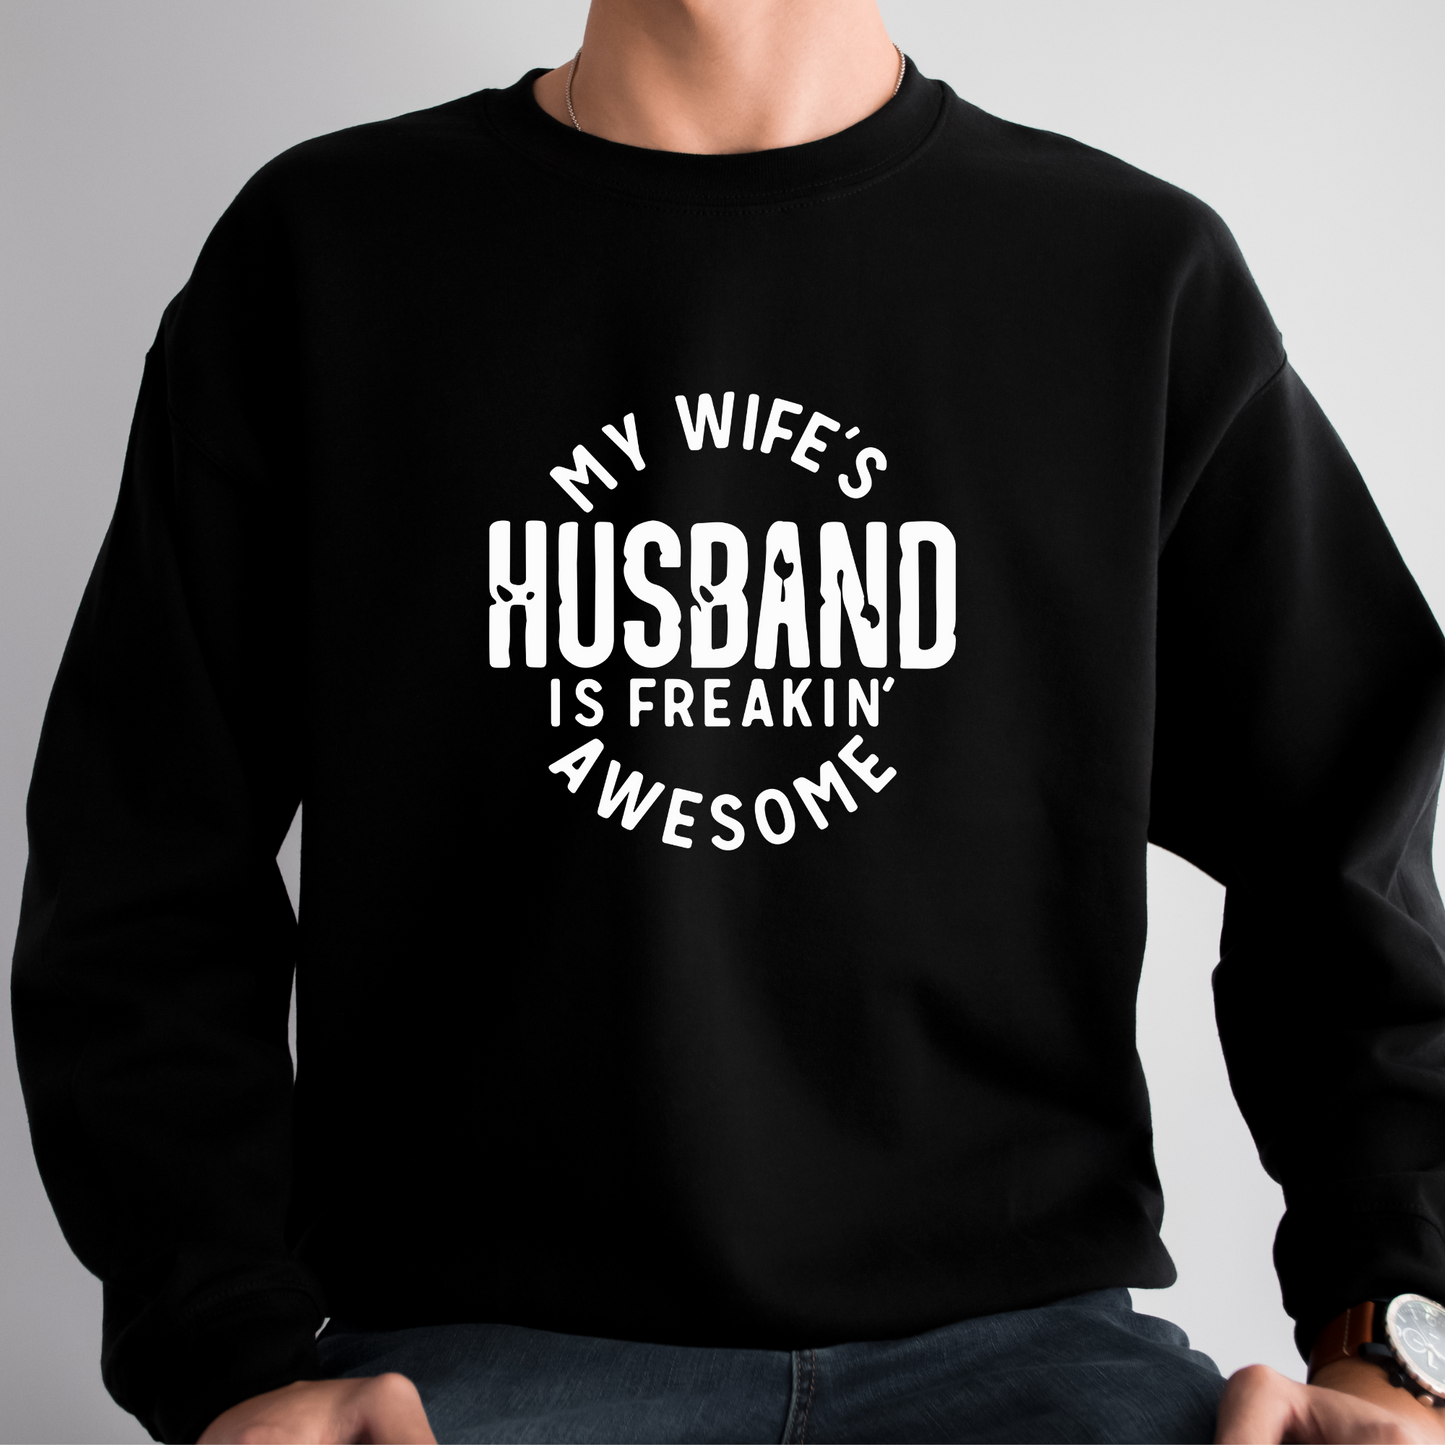 My Wife's Husband is Awesome Sweatshirt